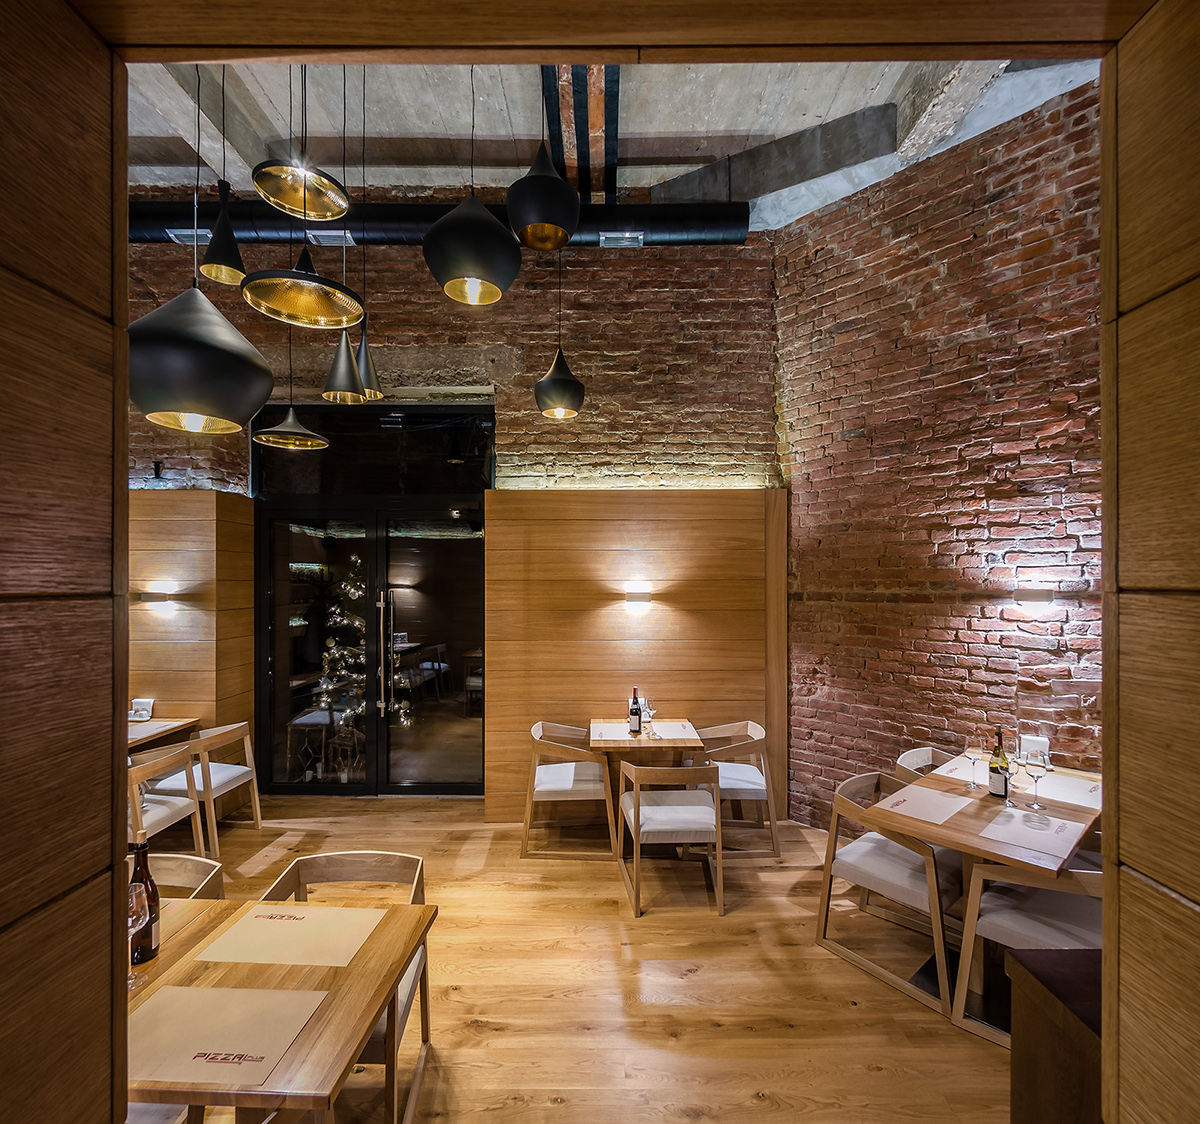 pizzeria Vip wood concrete brick caffee bar restaurant cafe